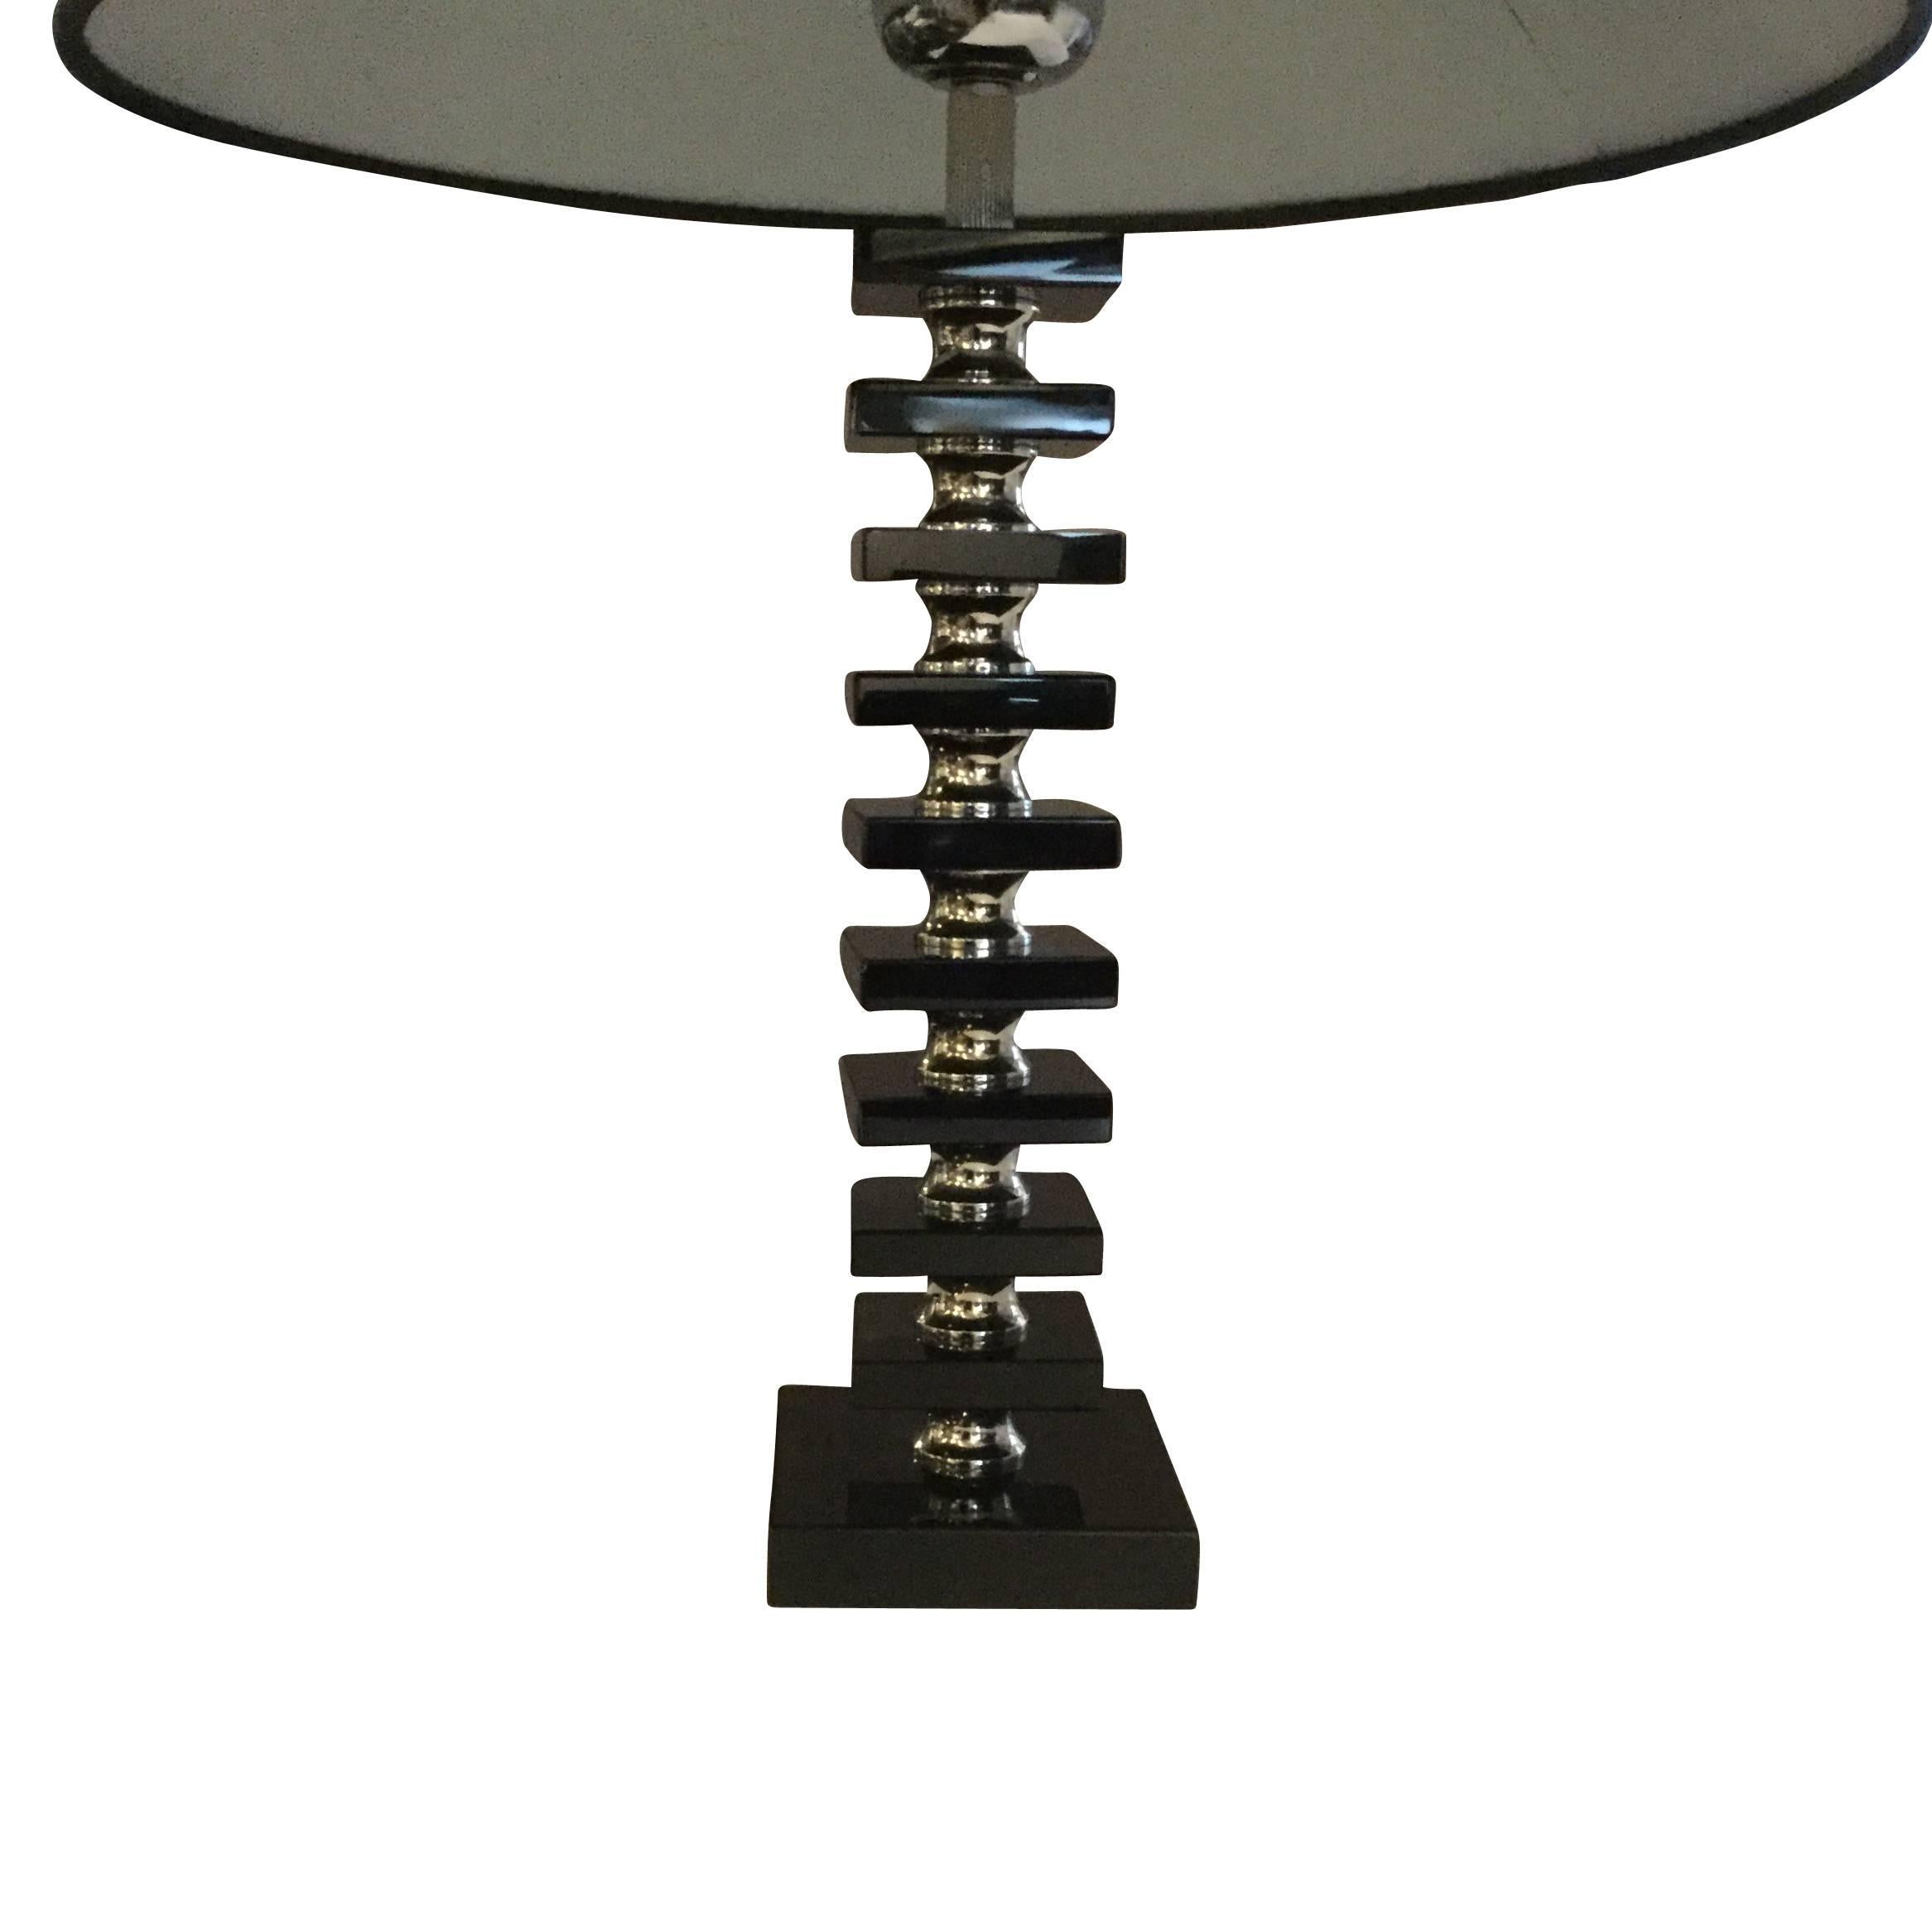 Paire de lampes de table modernes en bakélite noire et chrome. 
Mesures : base de 4